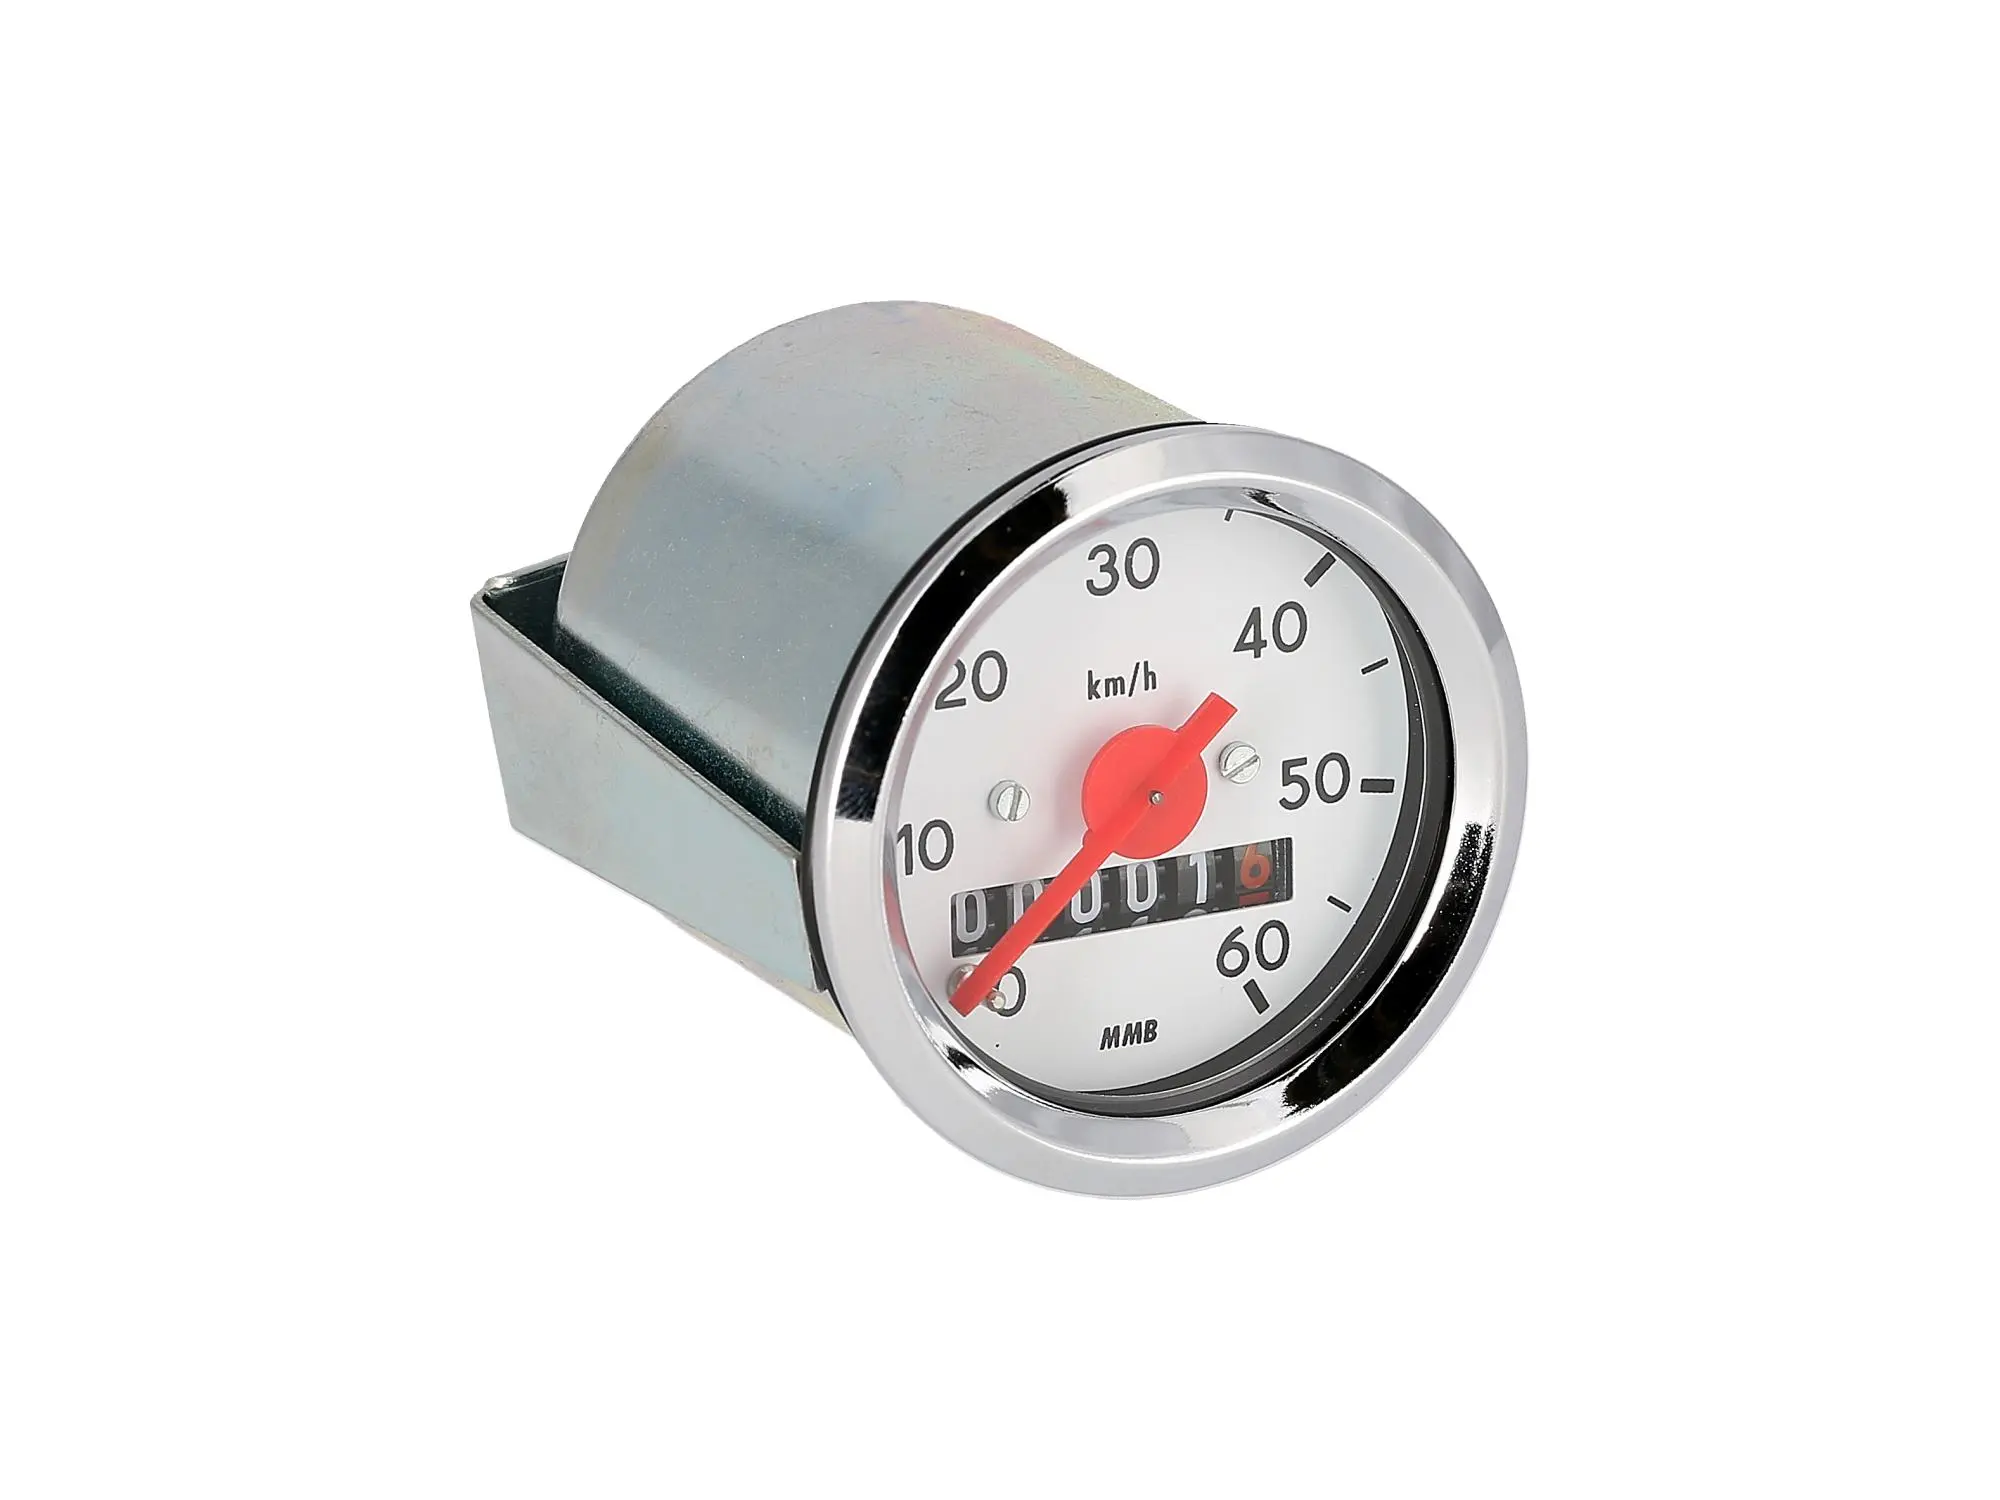 Tachometer Ø48mm für S50 bis 60 km/h, Art.-Nr.: 10001718 - Bild 1